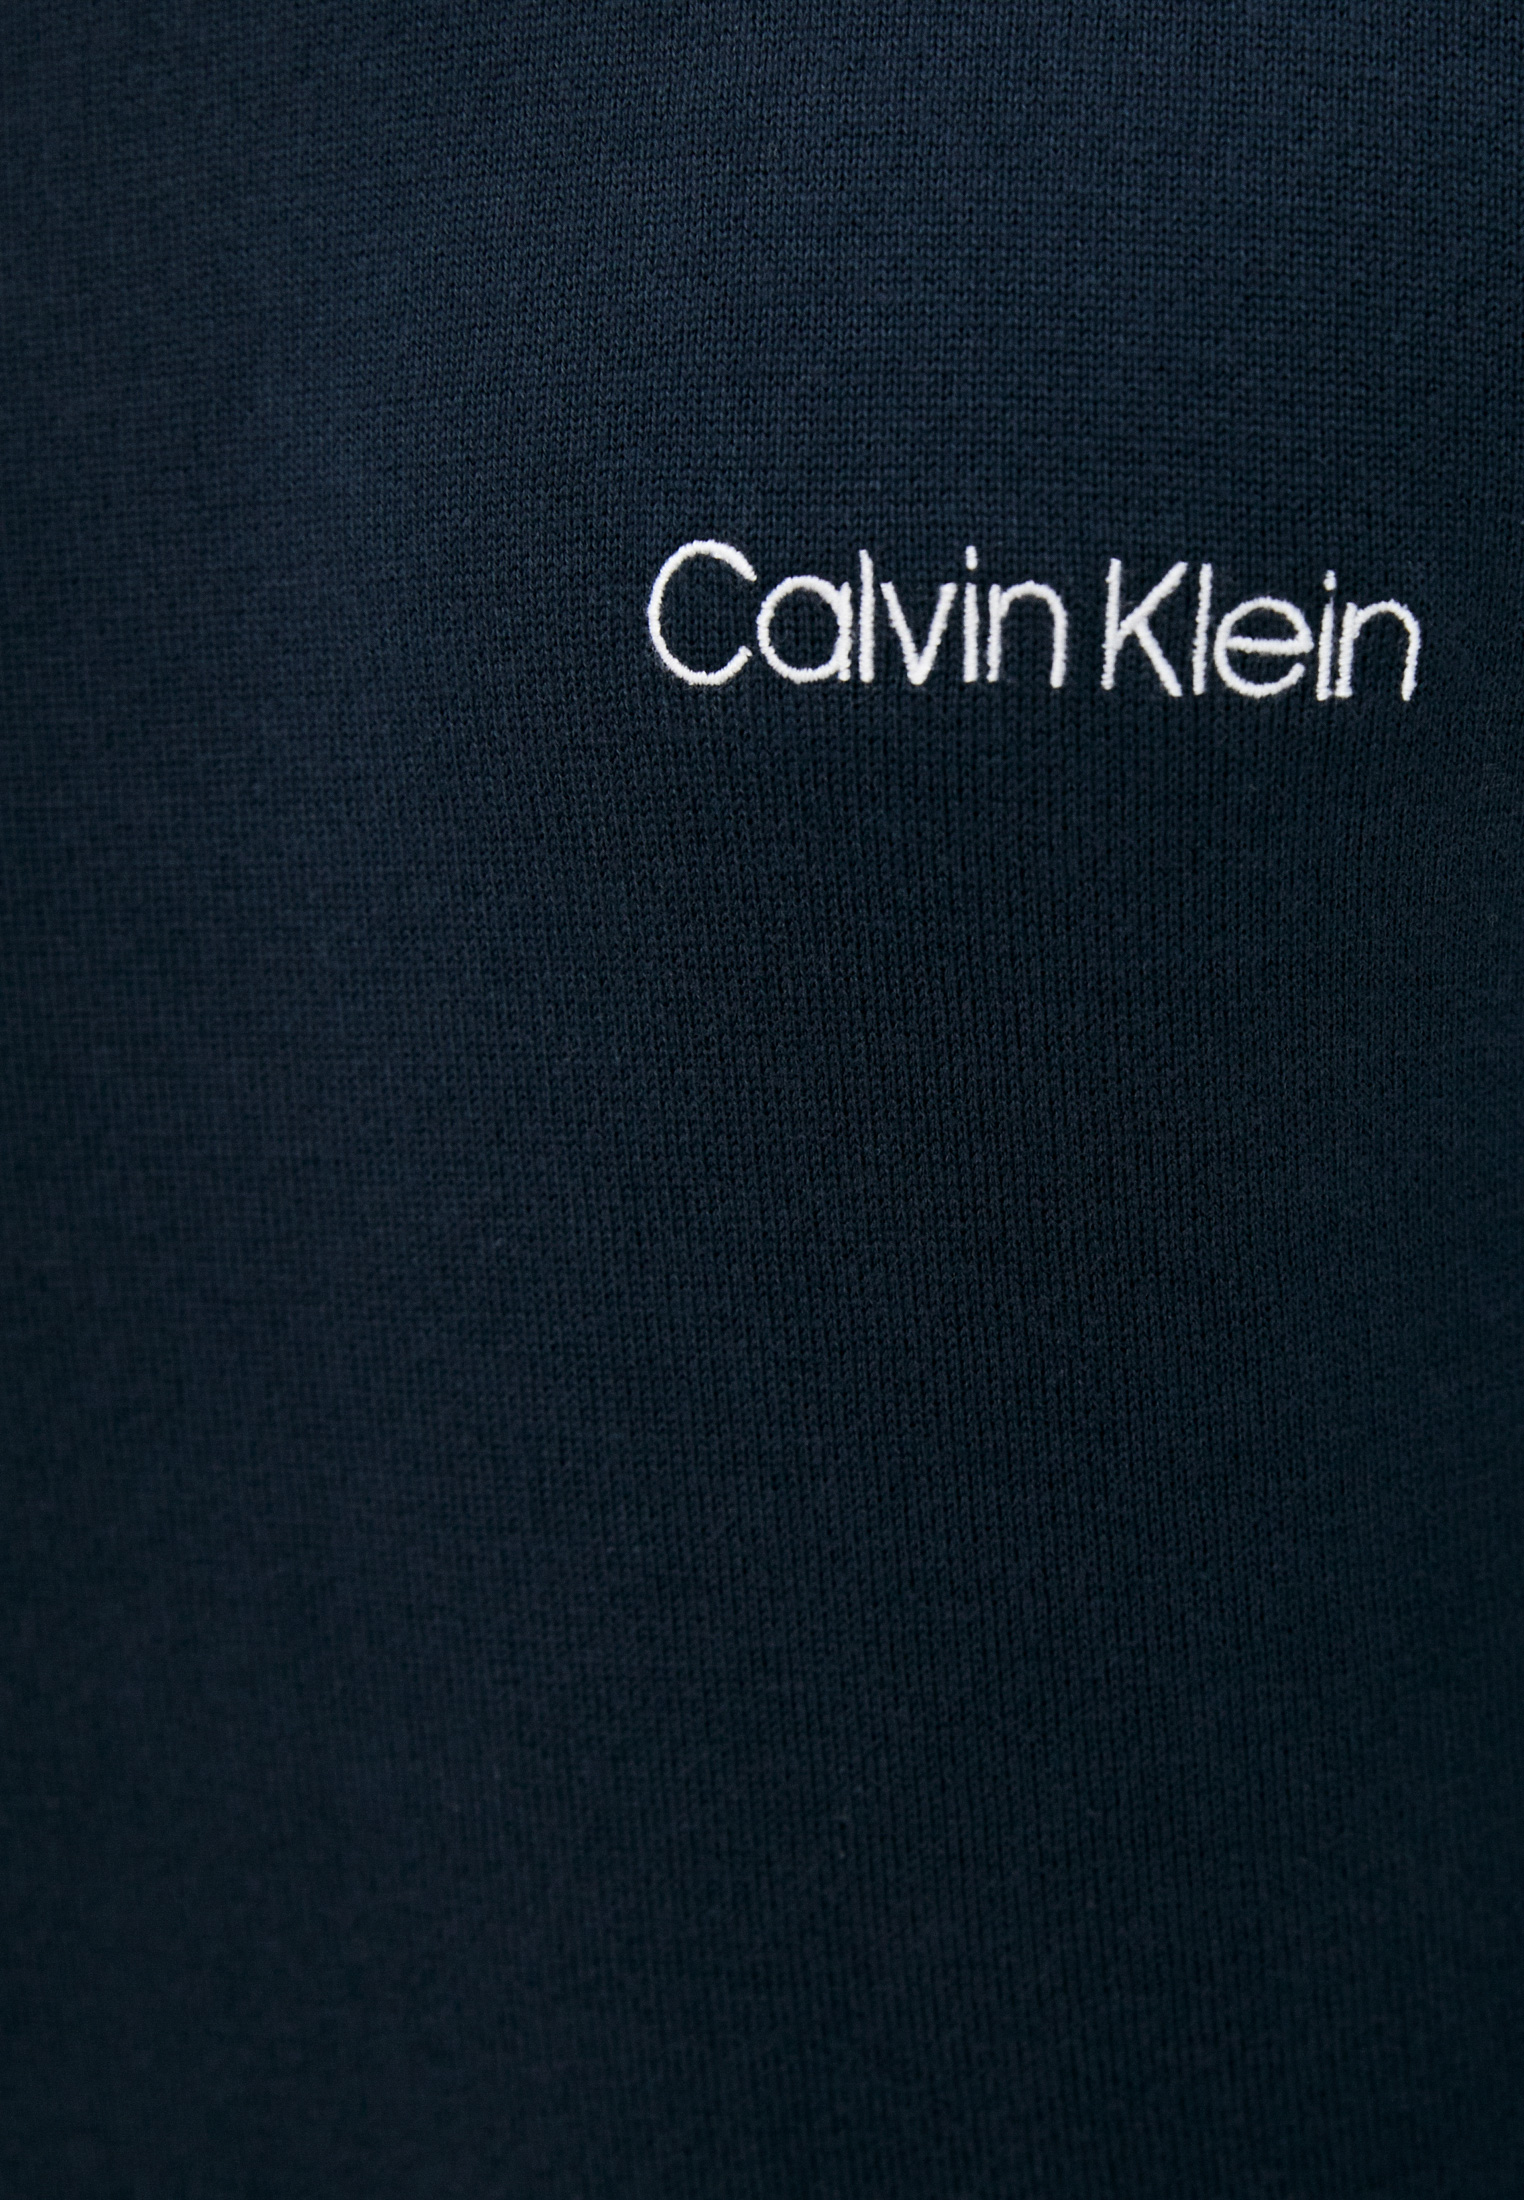 Джемпер Calvin Klein (Кельвин Кляйн) K10K107340: изображение 5